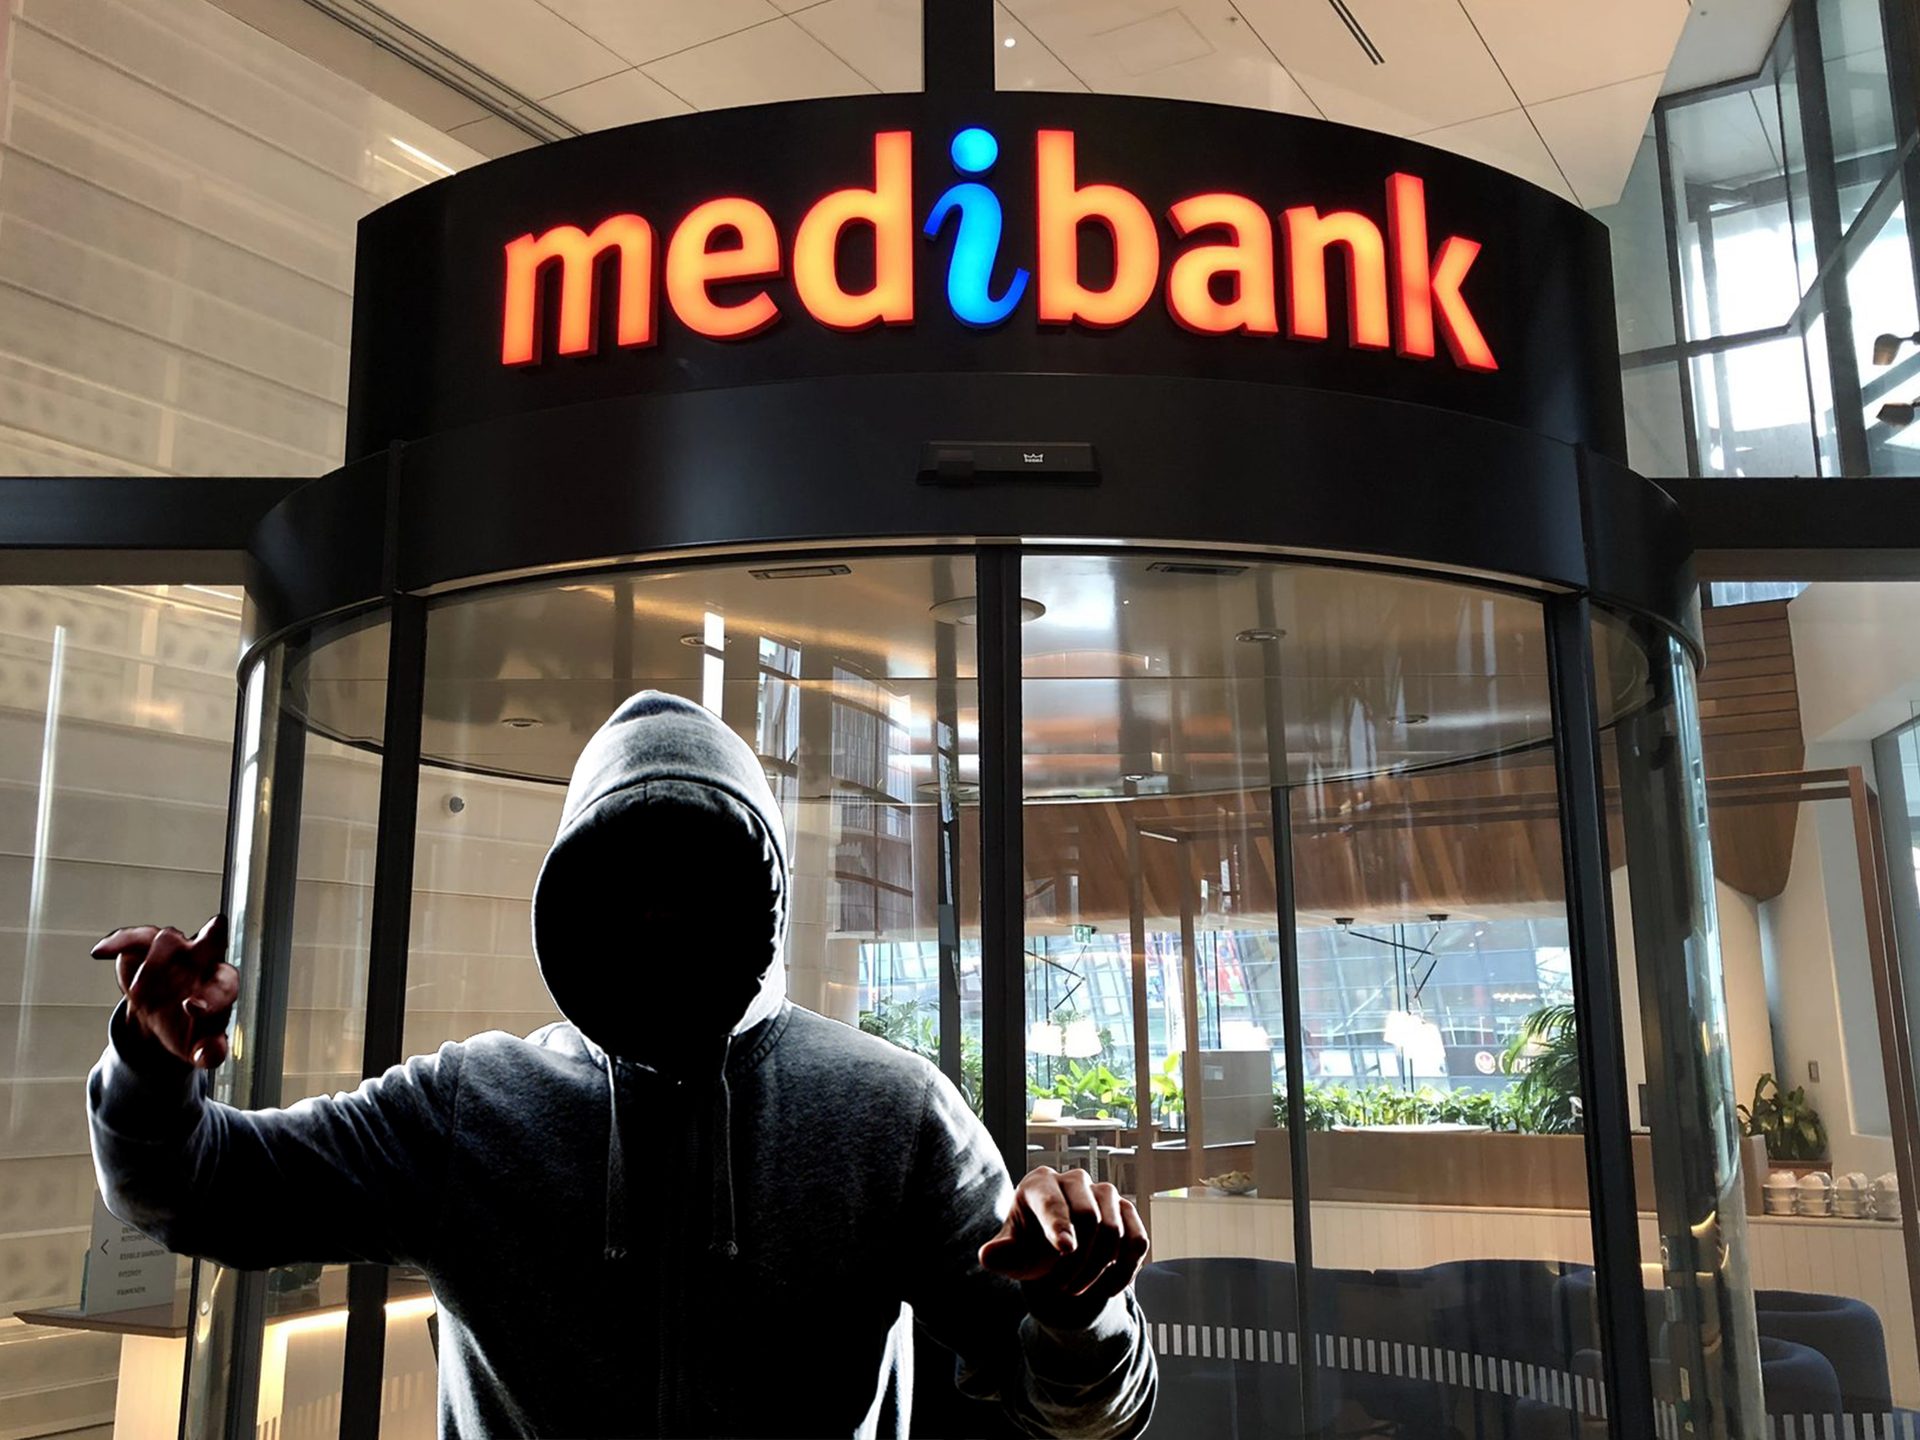 Explication du recours collectif de Medibank : Souvenez-vous de la violation de données de Medibank, rejoignez le recours collectif de Medibank pour violation de données et obtenez une indemnisation de Medibank pouvant aller jusqu'à 20,000 XNUMX $.